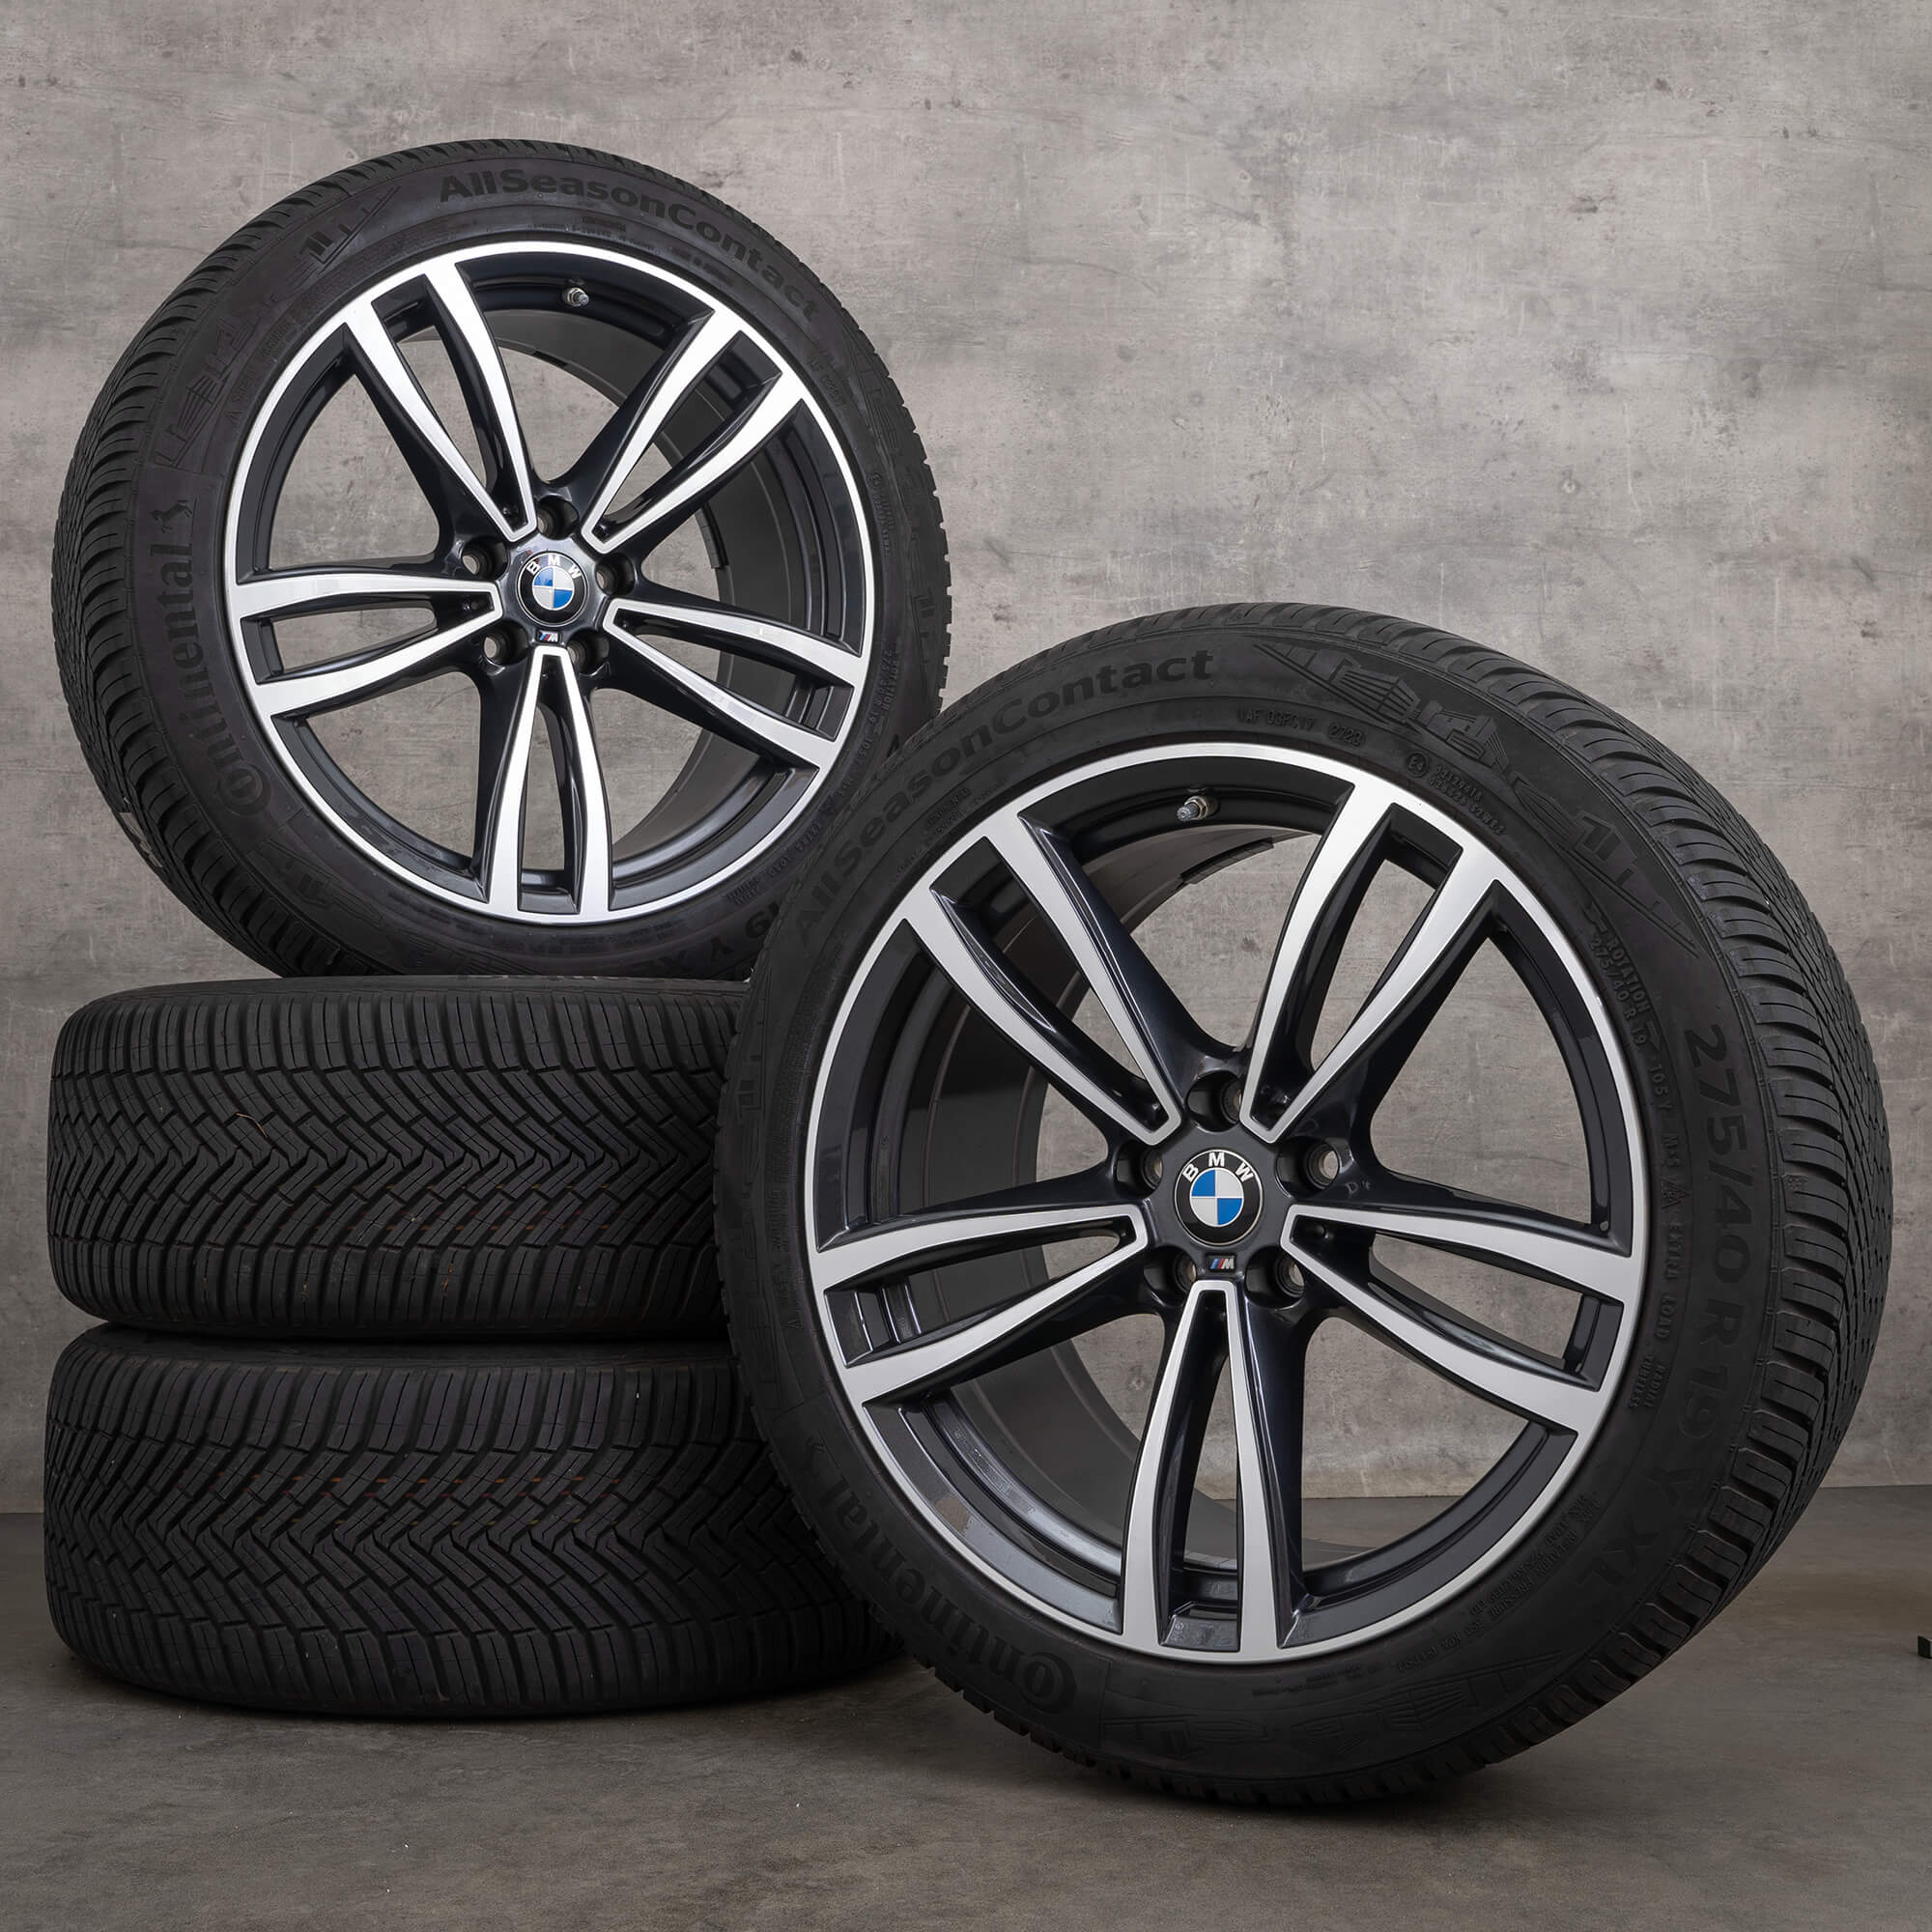 BMW Série 6 GT G32 7 G11 G12 pneus para todas as estações de 19 polegadas